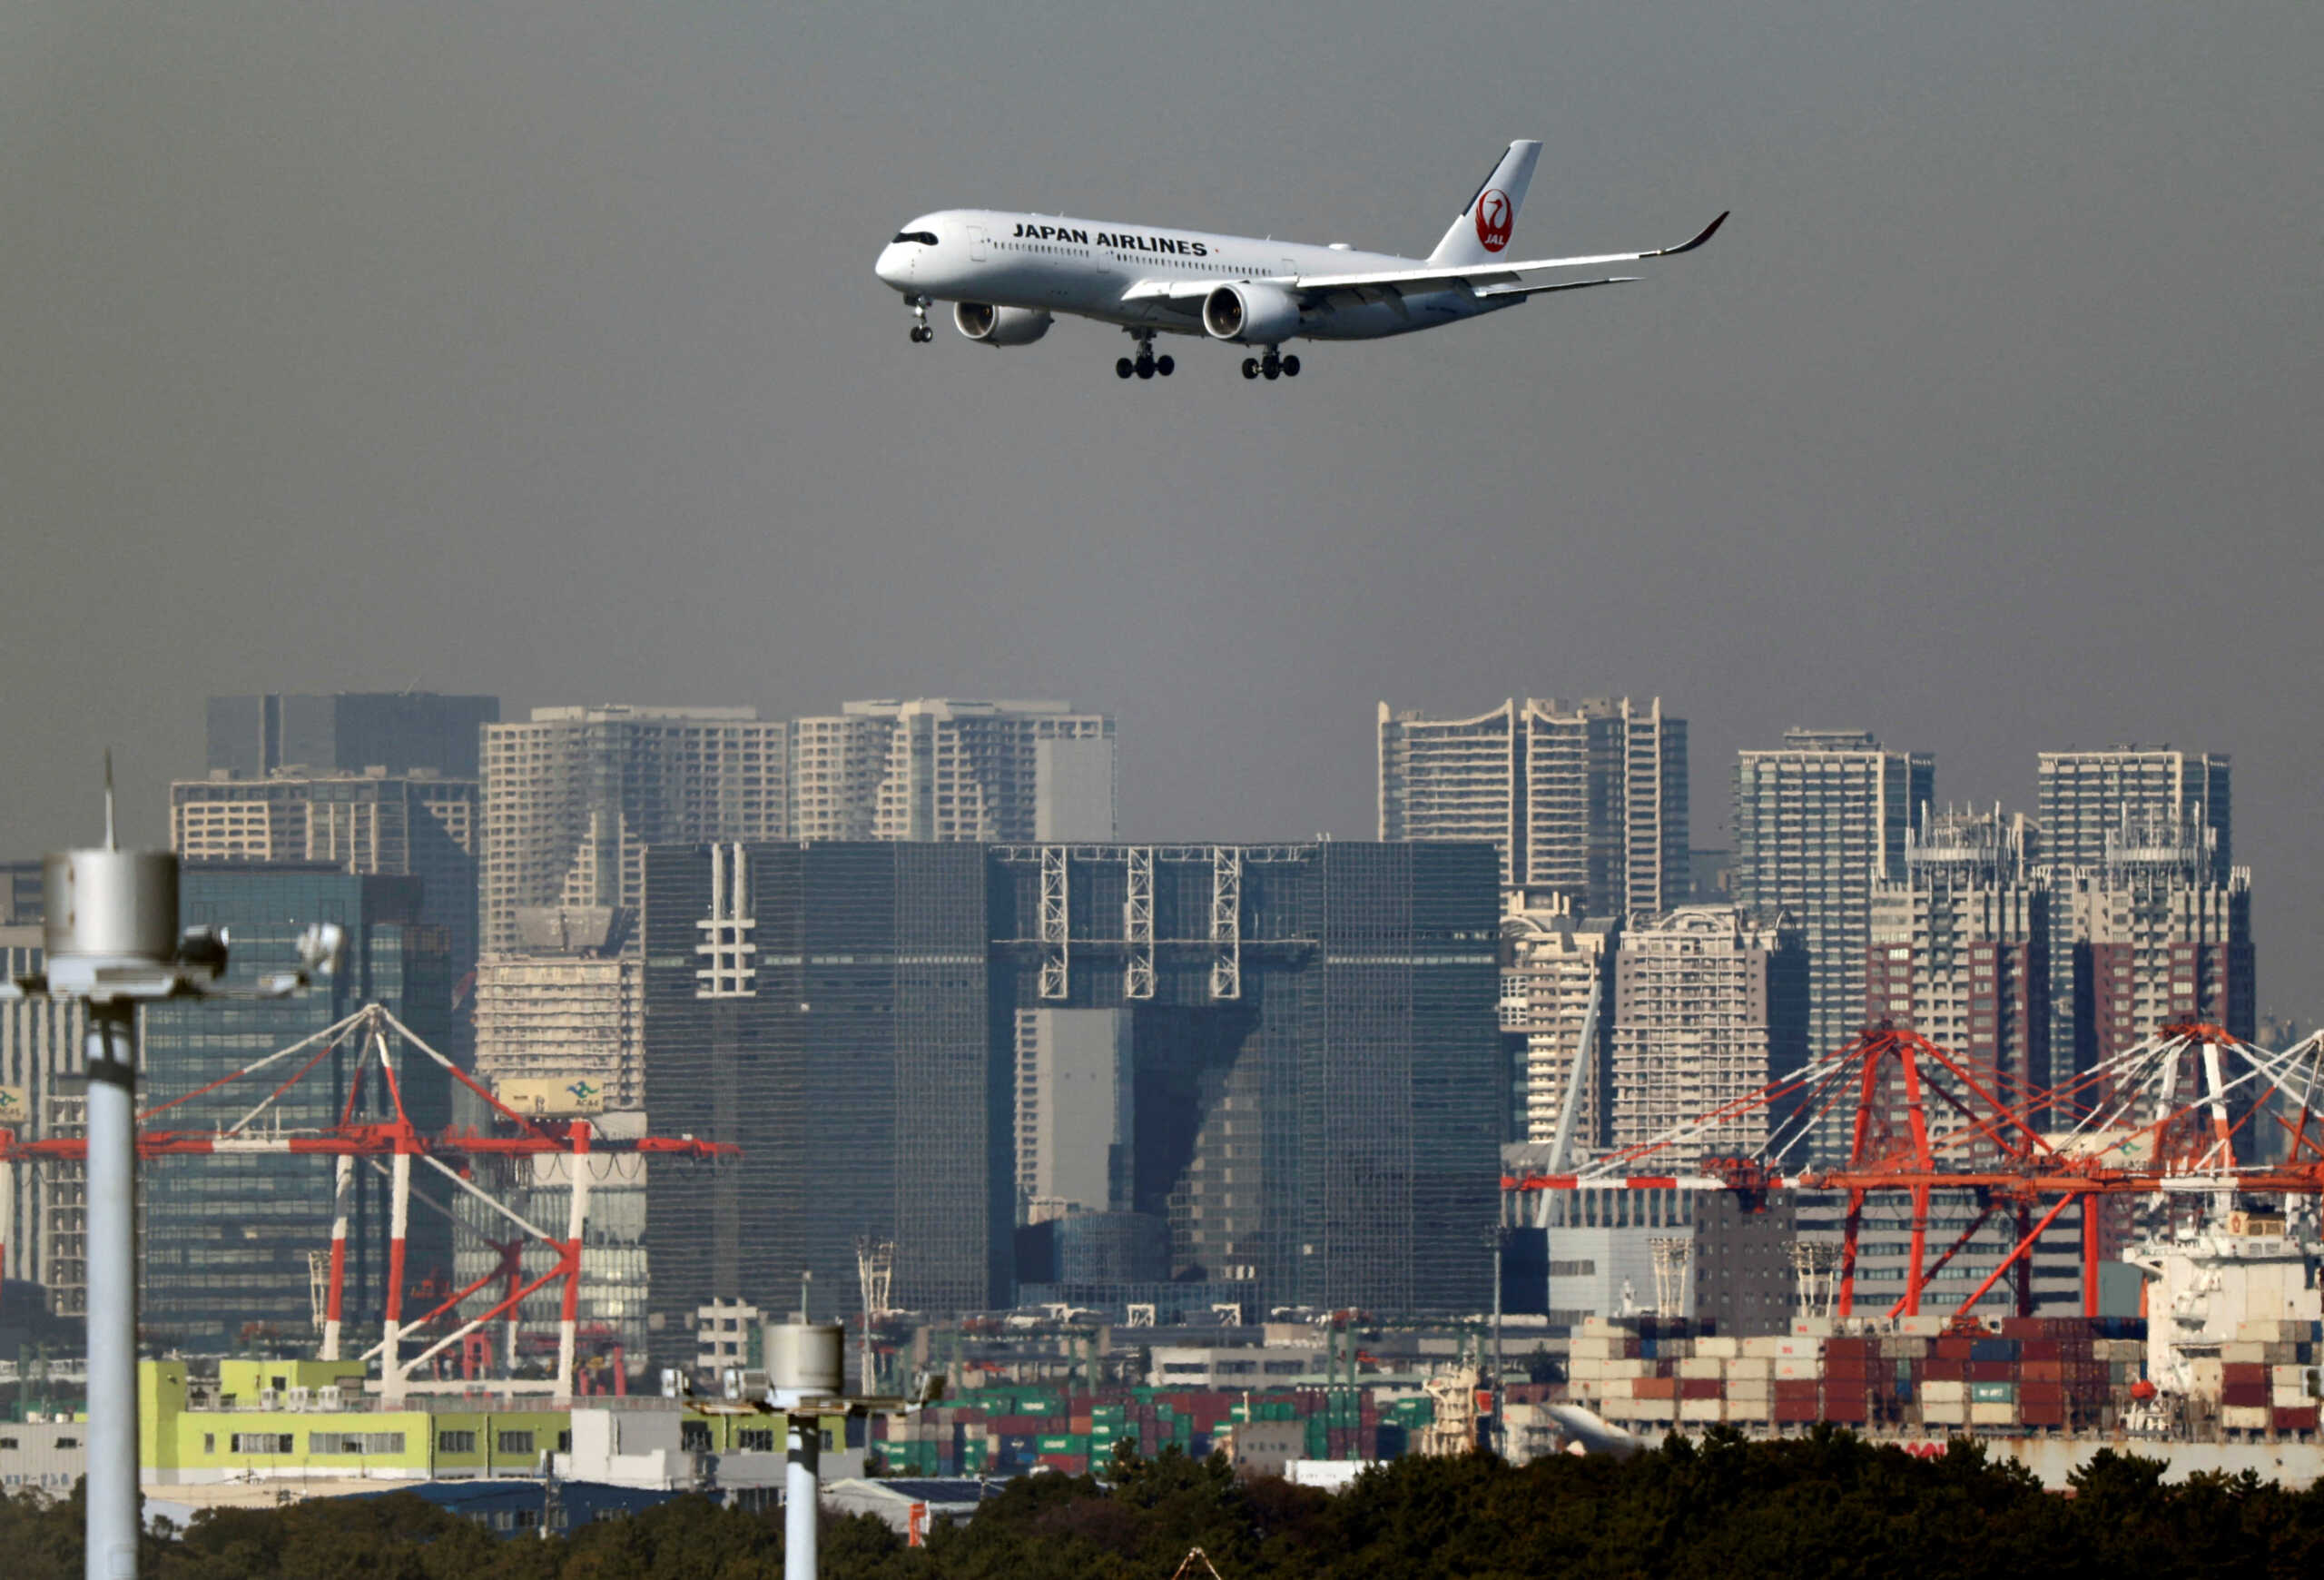 Ιαπωνία: Σύγκρουση επιβατικών αεροπλάνων στο αεροδρόμιο της Οσάκα